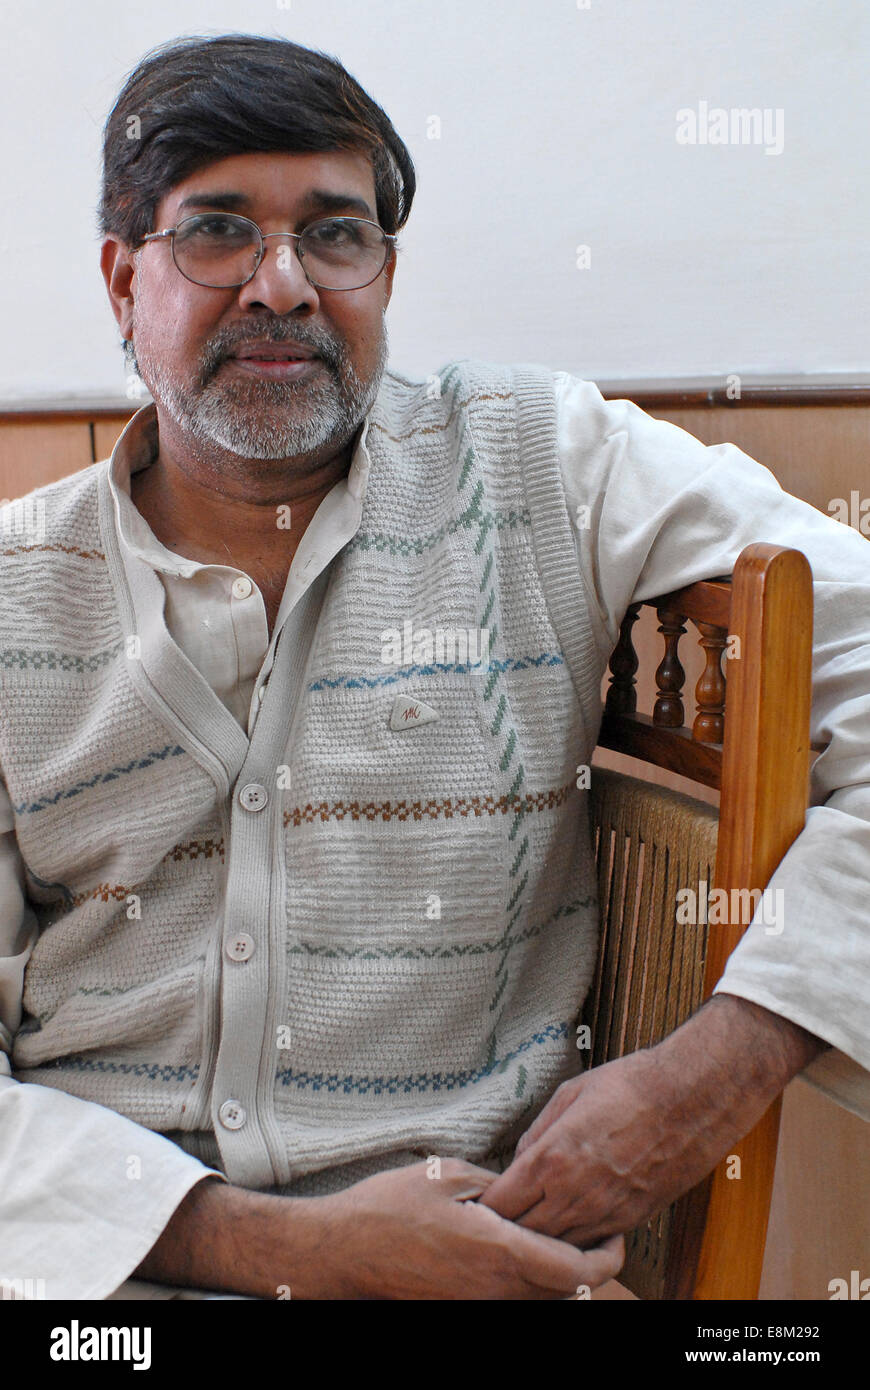 Indien Rajasthan, Bal Ashram für gerettete Kind Hilfsarbeiter, Menschenrechtler Kailash Satyarthi, Gründer und Leiter der NGO-BBA/SACCS, die für die Rechte der Kinder und gegen Kinderarbeit, wurde er 2014 mit dem Nobelpreis ausgezeichnet, Bilder, November 2006 Stockfoto